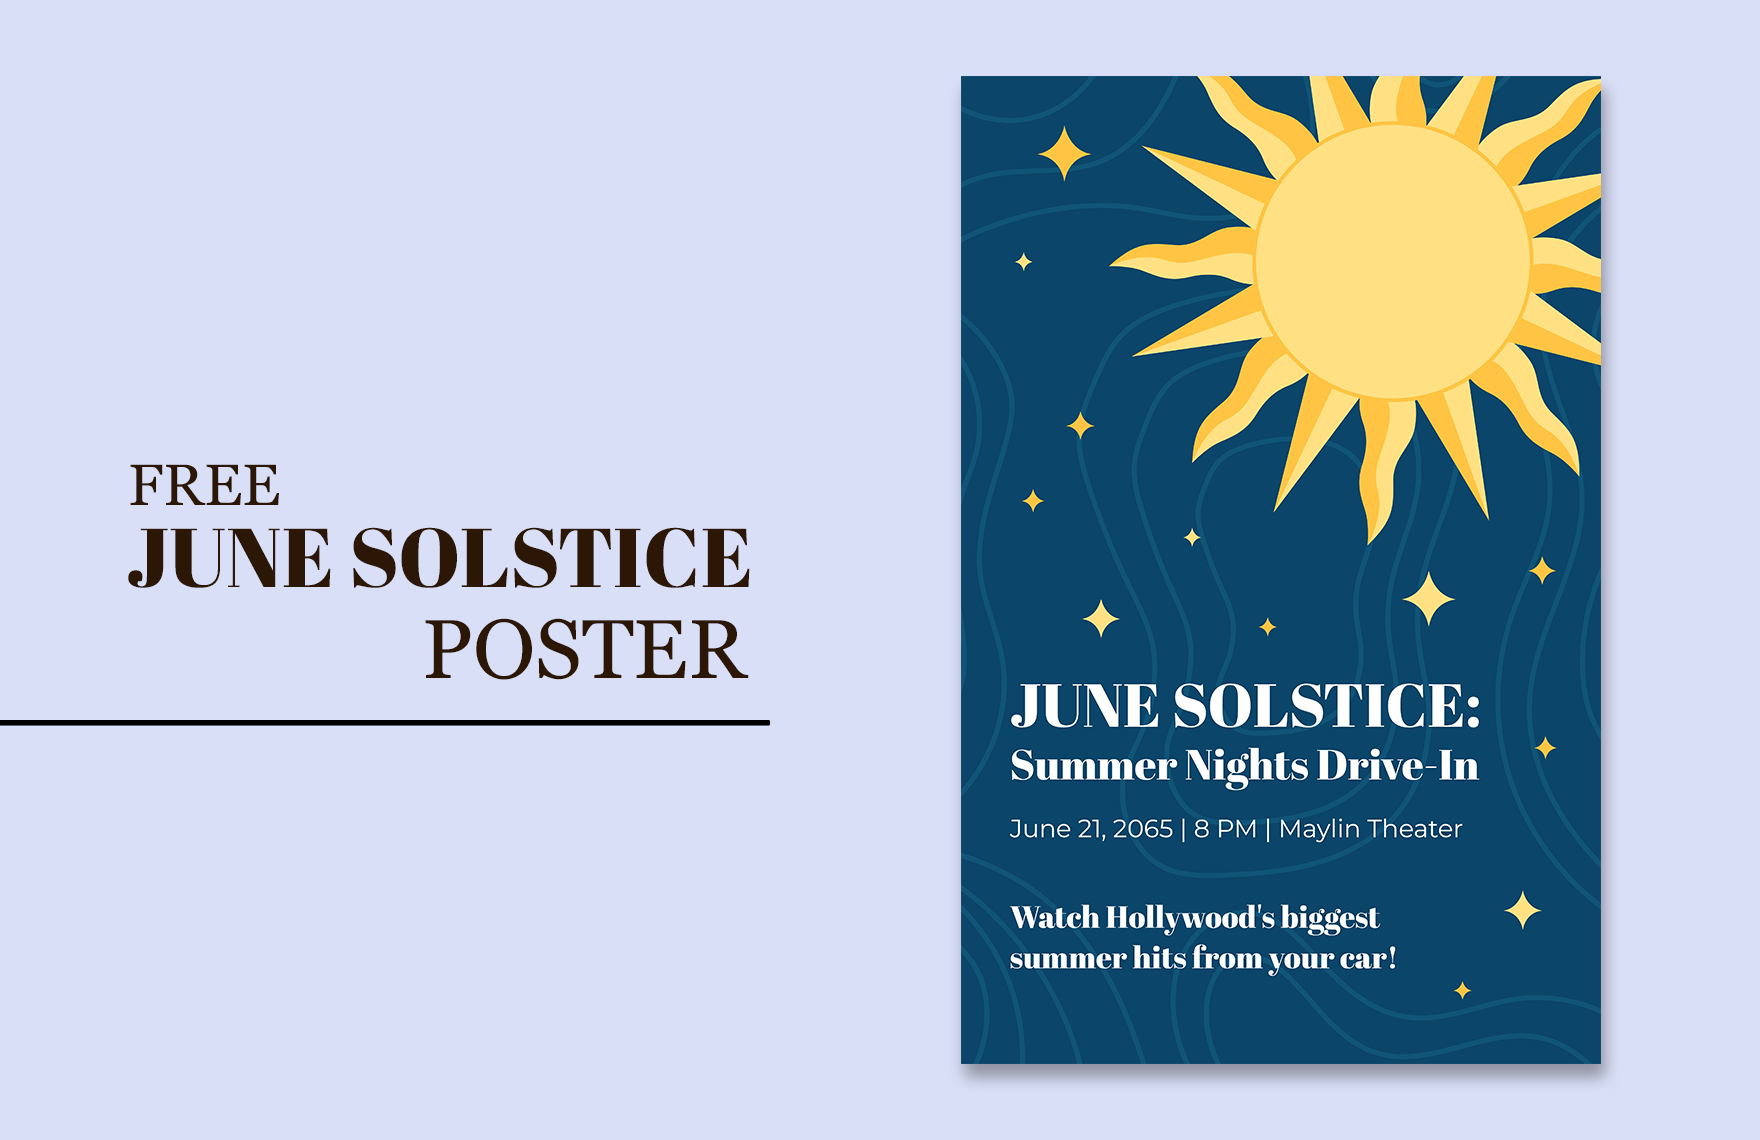 June Solstice Poster in Word, Google Docs, Illustrator, PSD, EPS, SVG, JPG, PNG